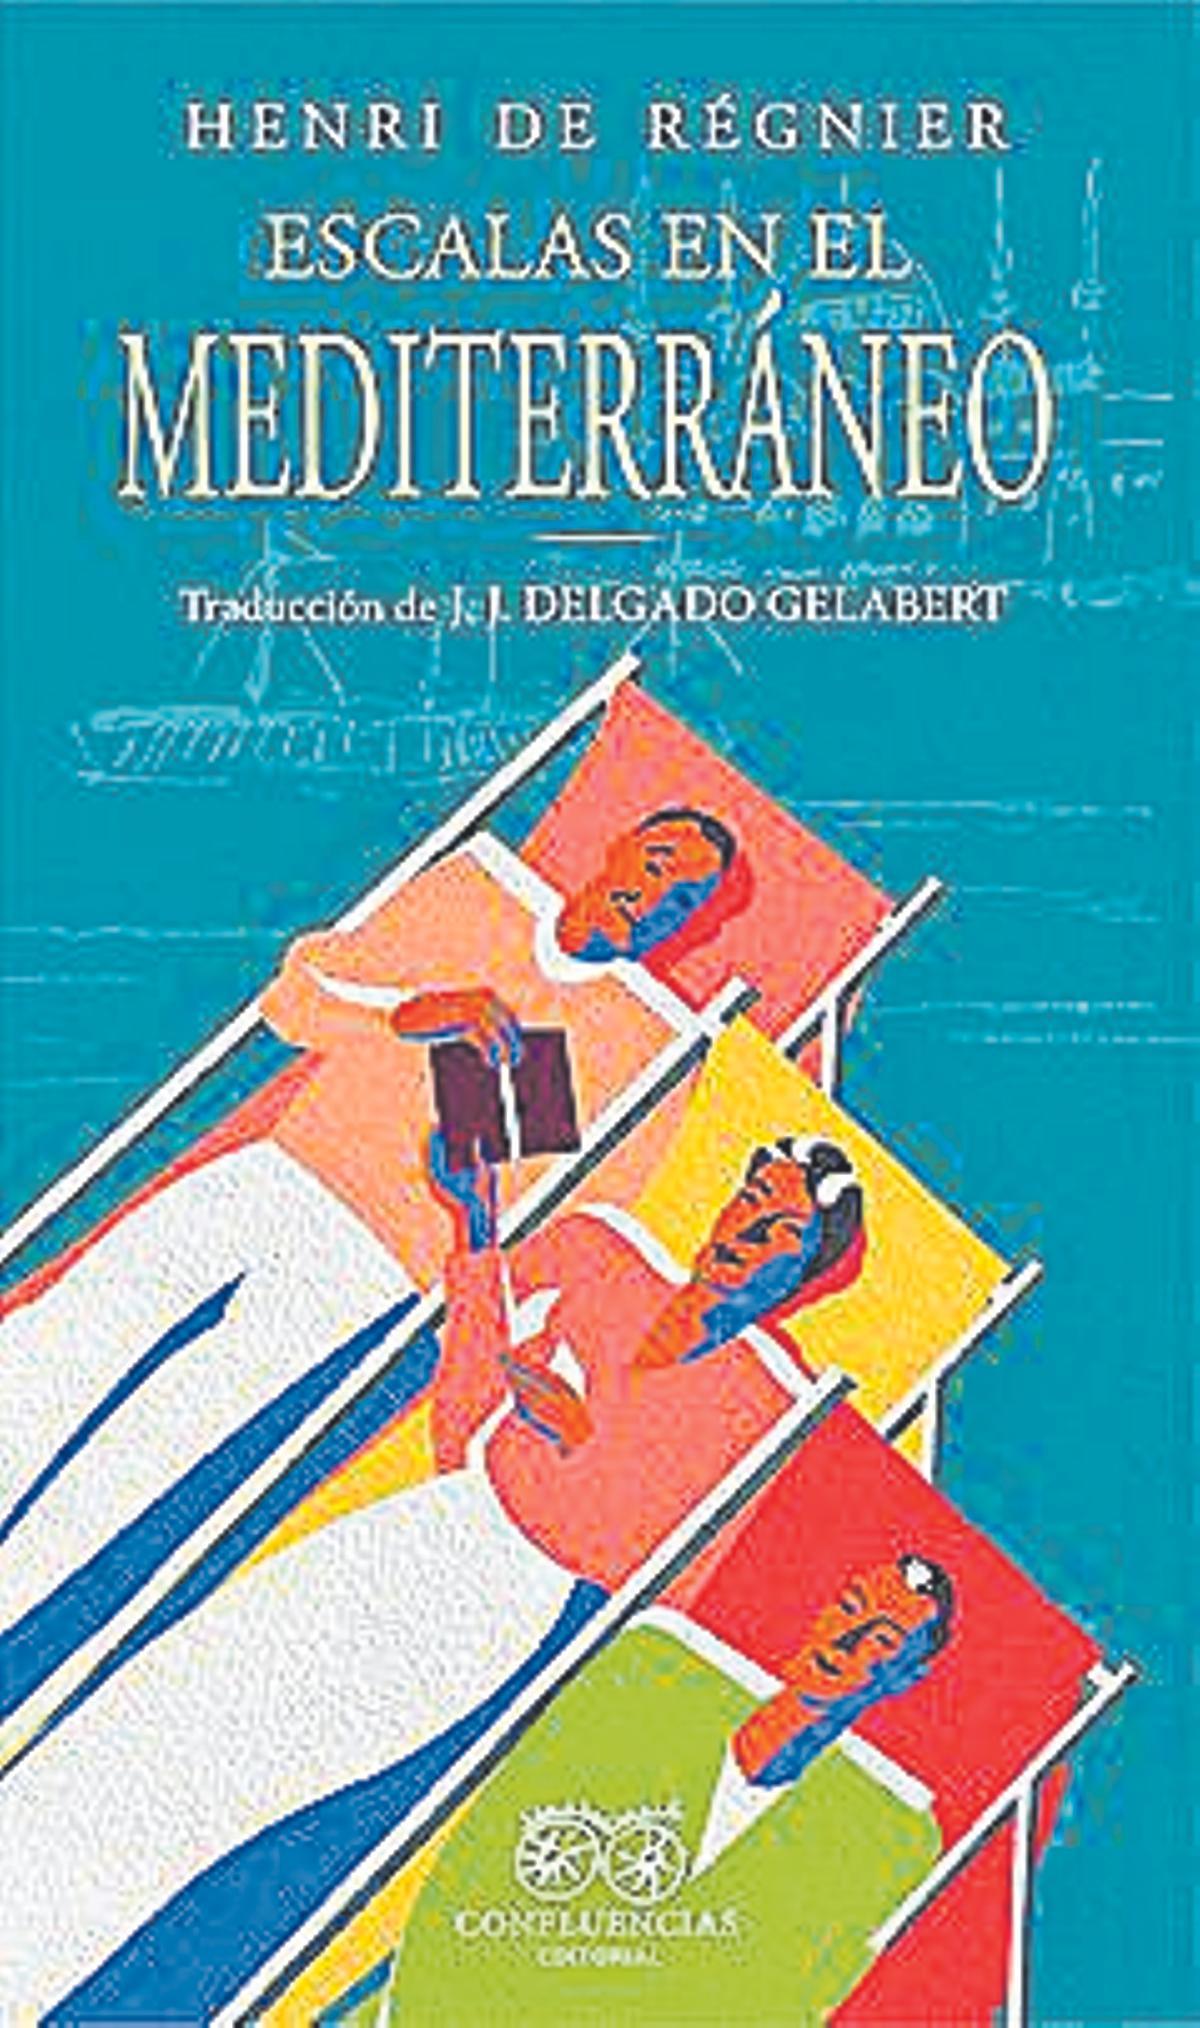 Portada del llibre 'Escalas en el Mediterráneo' d'Henri de Régnier.